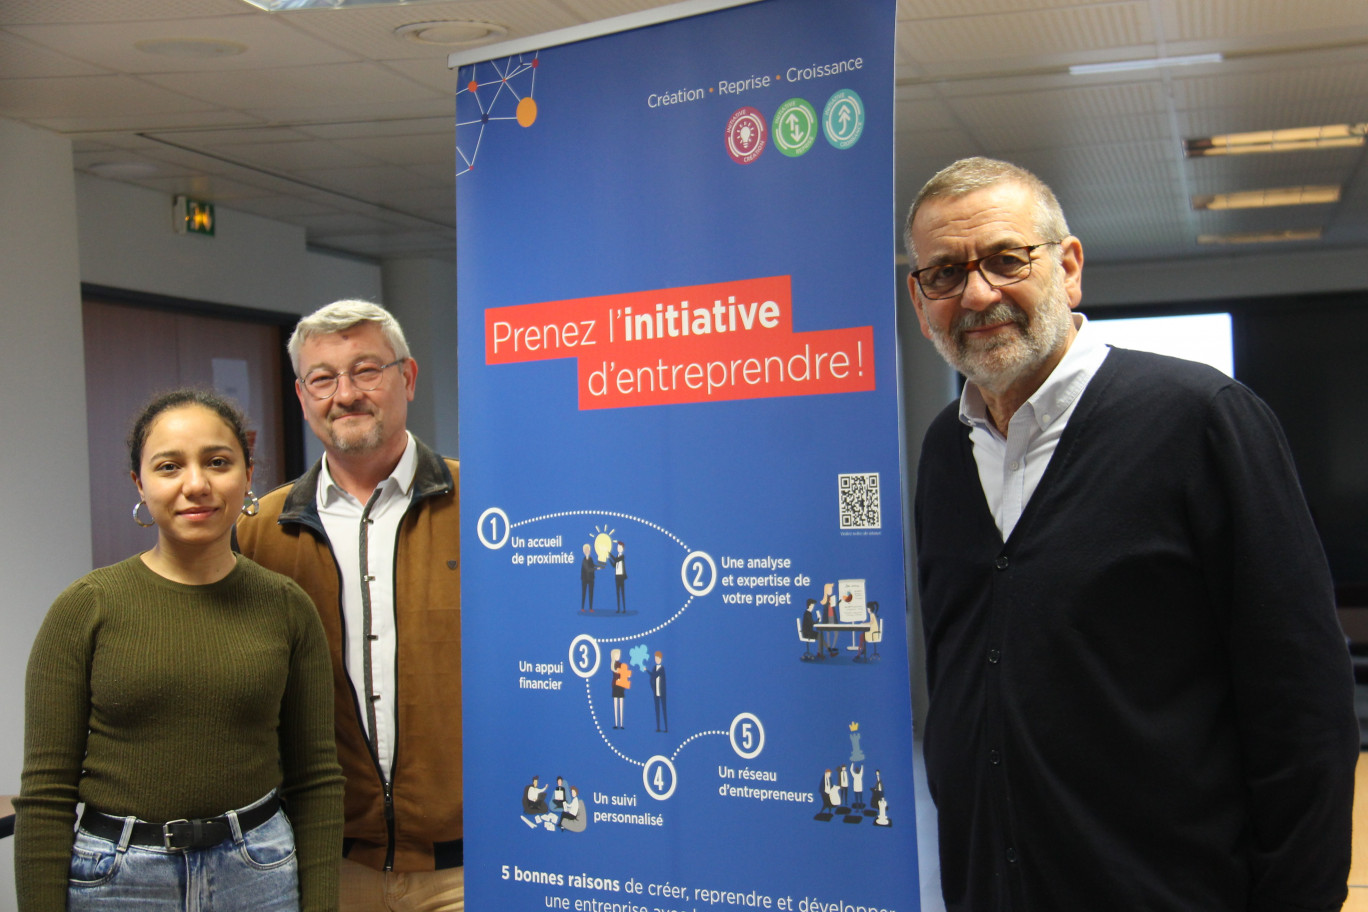 Présidé par Dominique Erard (à droite) et dirigé par Jean-Pierre Arfeuil, Intiative Grand Nancy s’adapte à l’évolution sociétale de l’entrepreneuriat en ciblant aujourd’hui les secteurs de la tech, du numérique, du digital et de l’innovation au sens large.